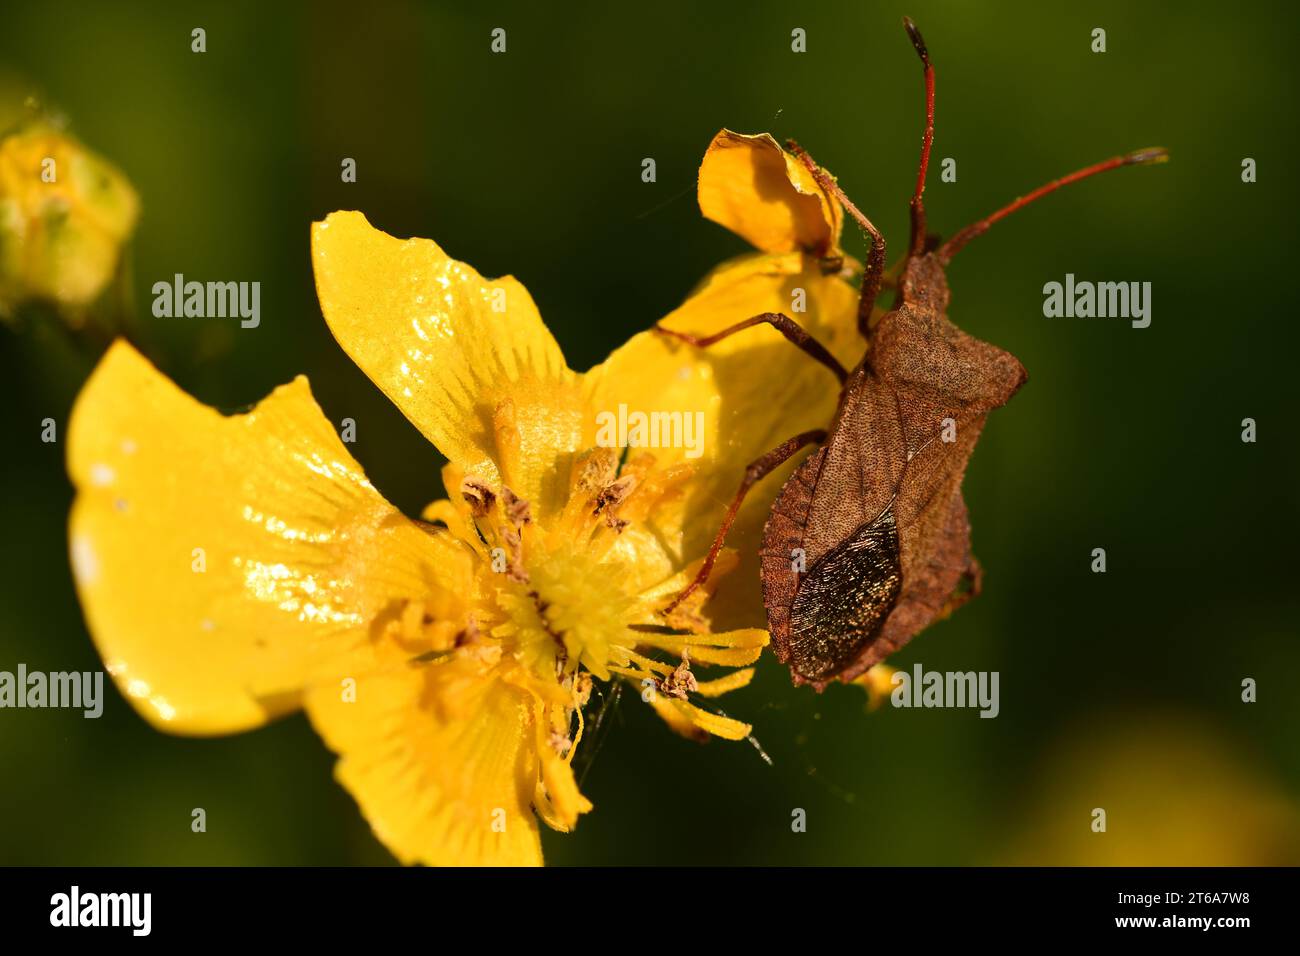 Coreidae, insecte à pieds de feuilles, insectes, macrophotographie, Kilkenny, Irlande Banque D'Images